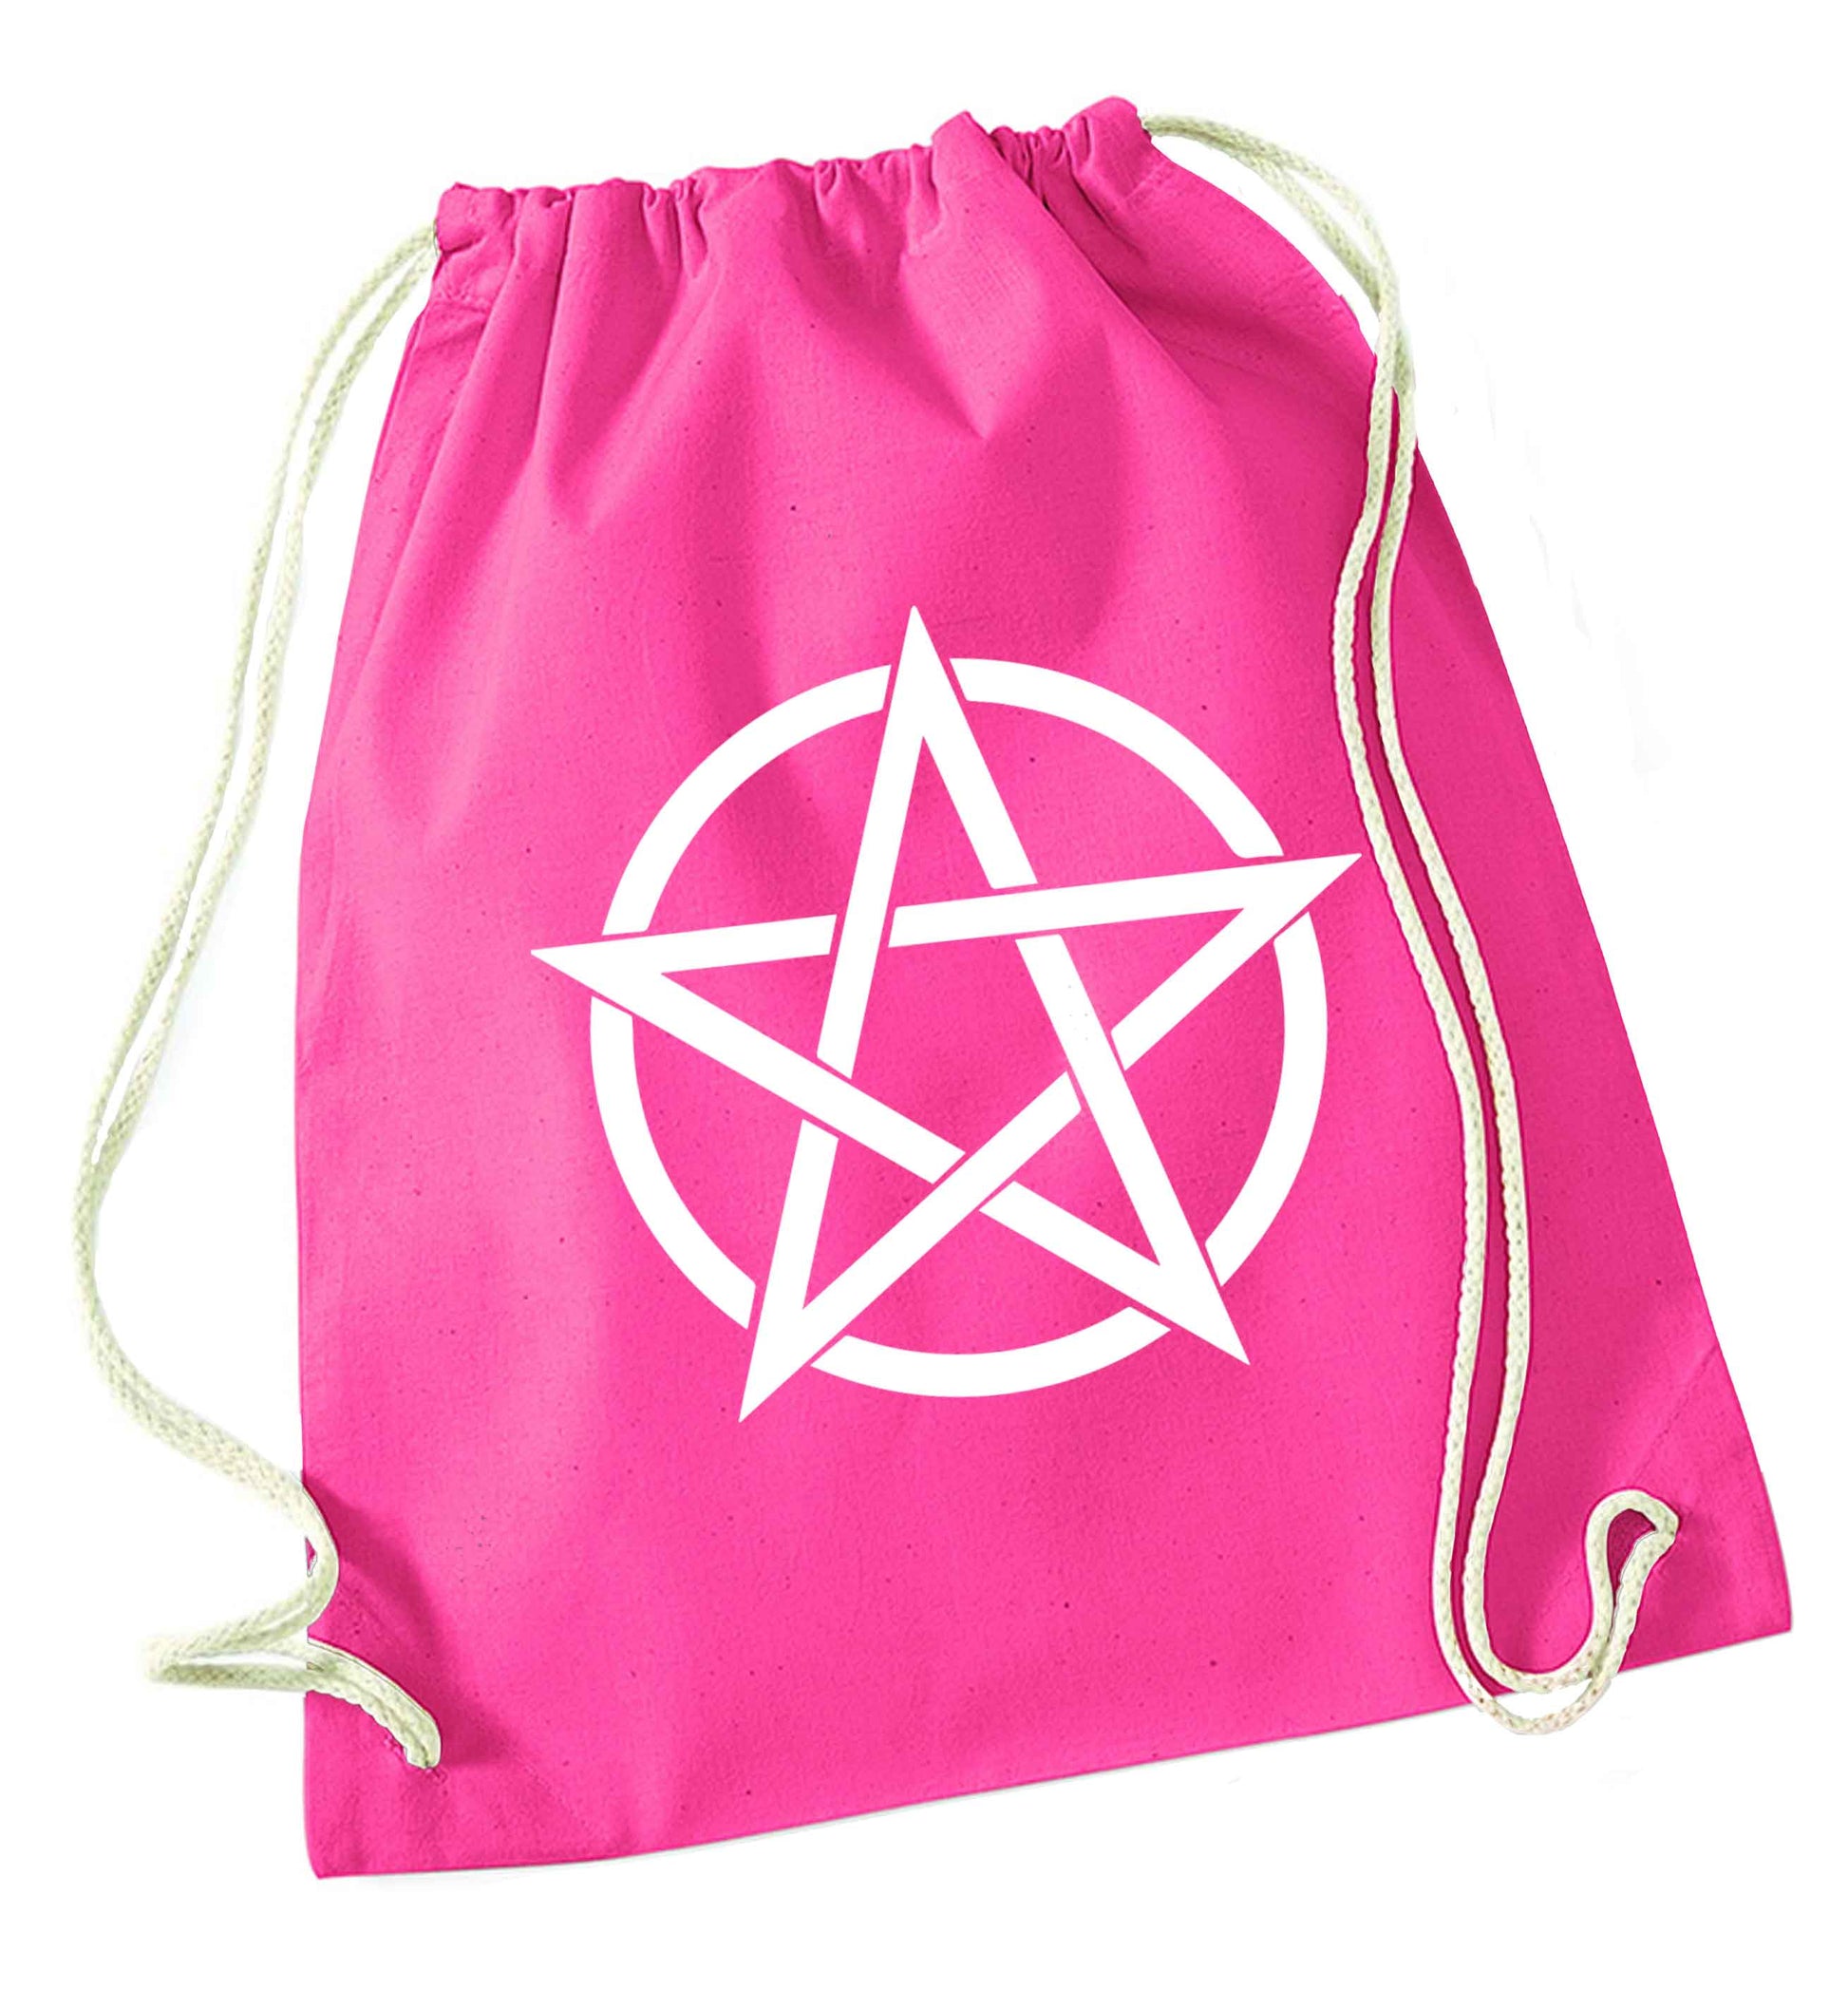 Pentagram symbol pink drawstring bag